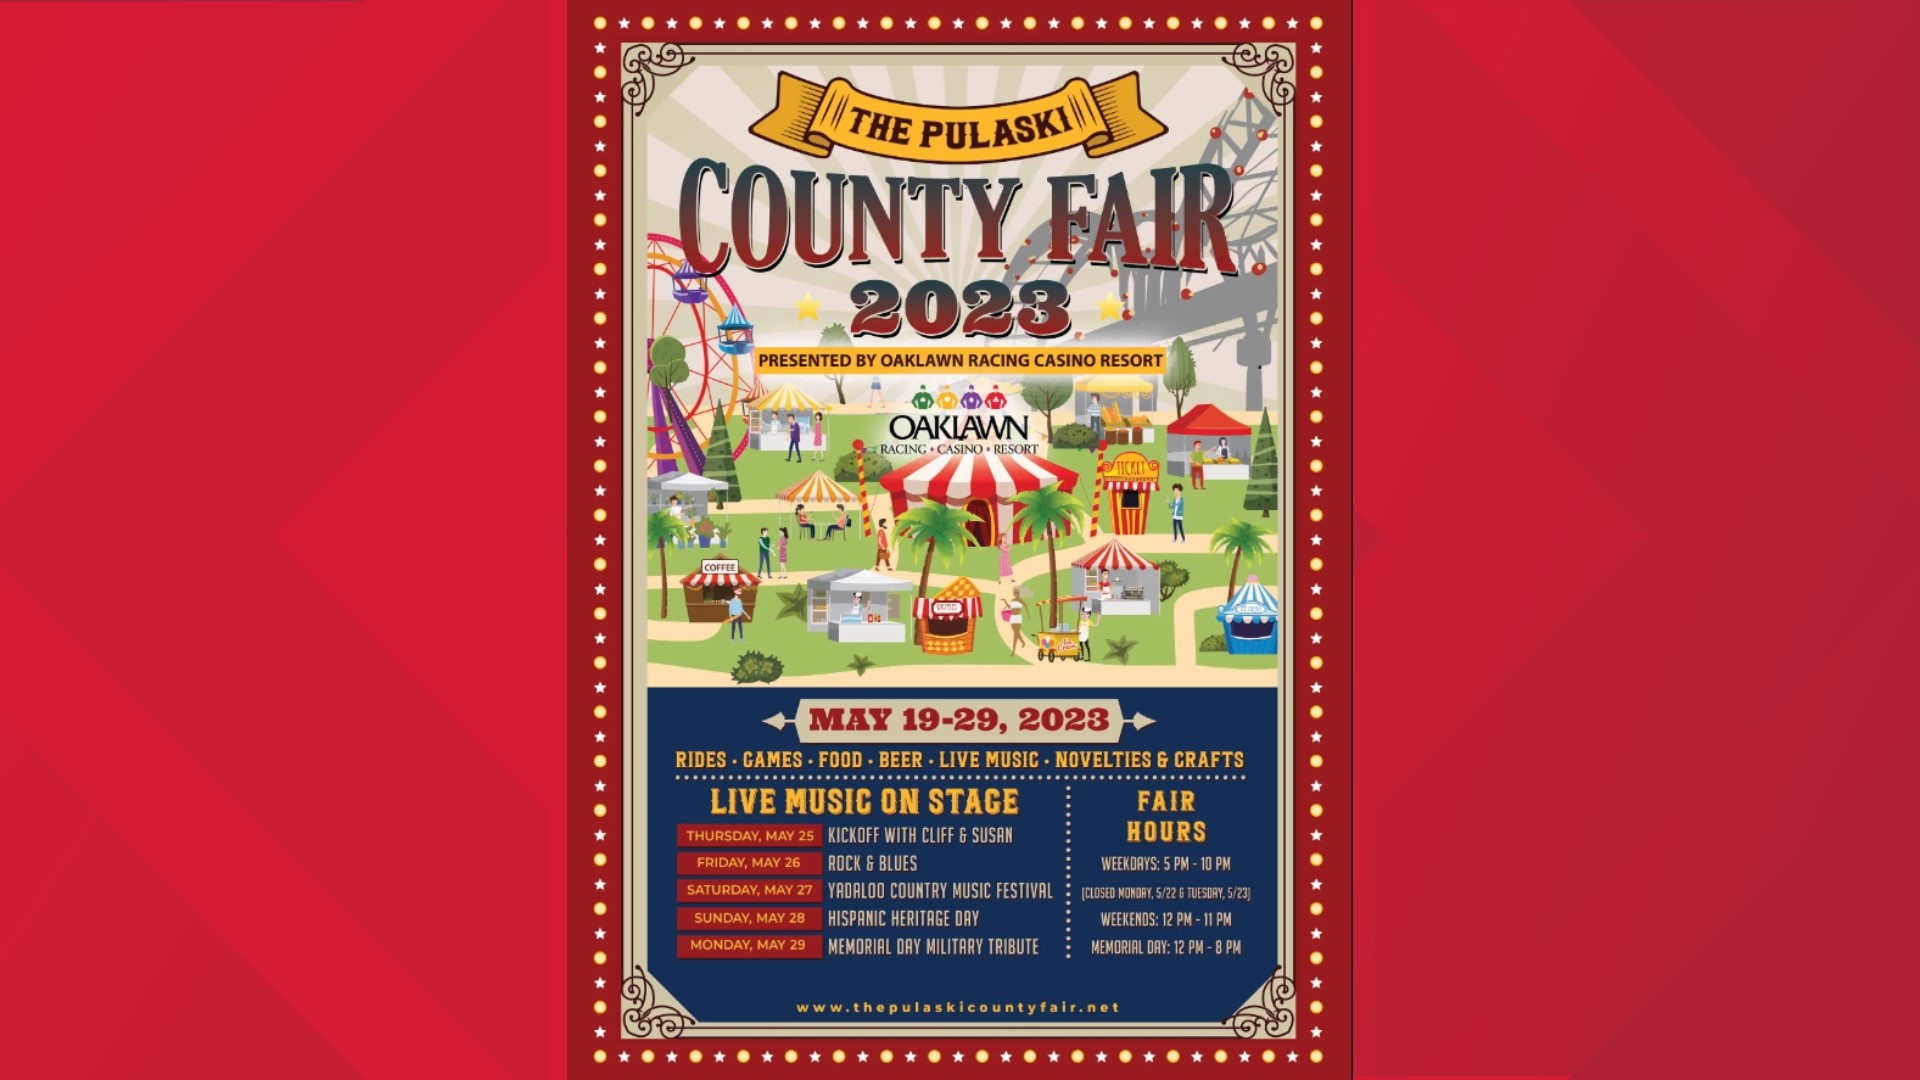 3rd annual Pulaski County Fair comes to NLR